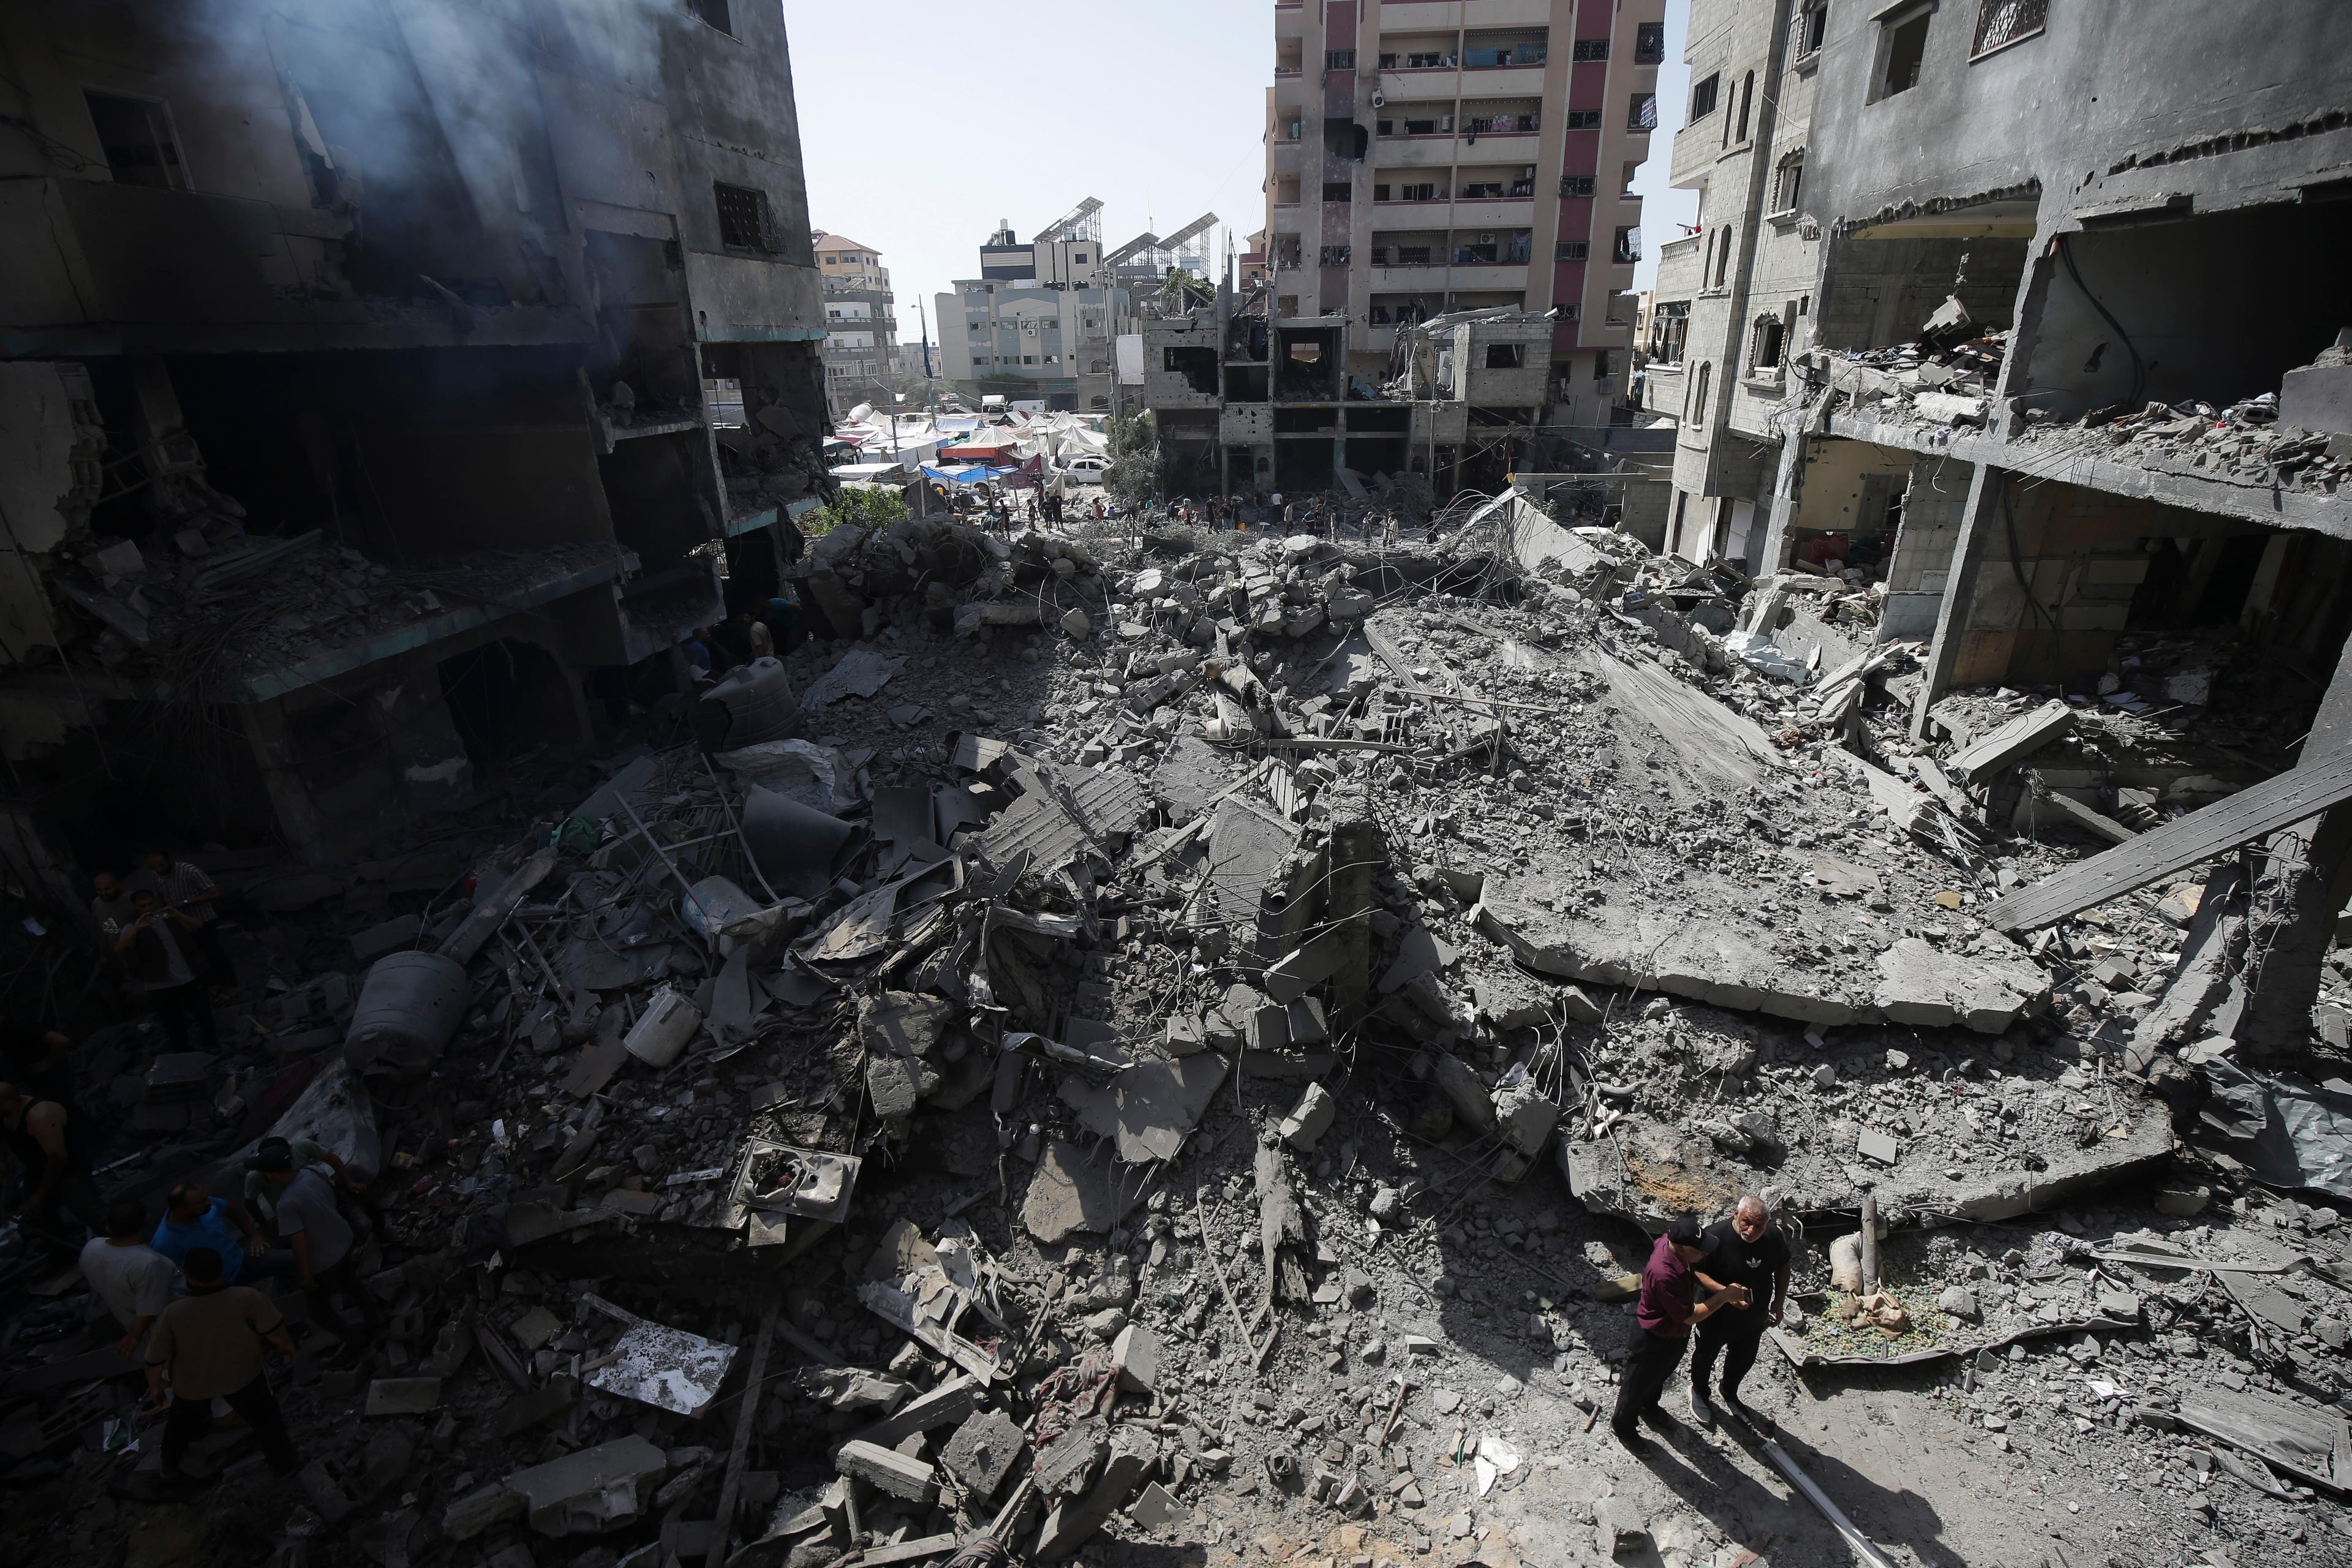 Nuseirat i Gaza efter ett anfall i början av juni. Foto: Jehad Alshrafi/AP/TT